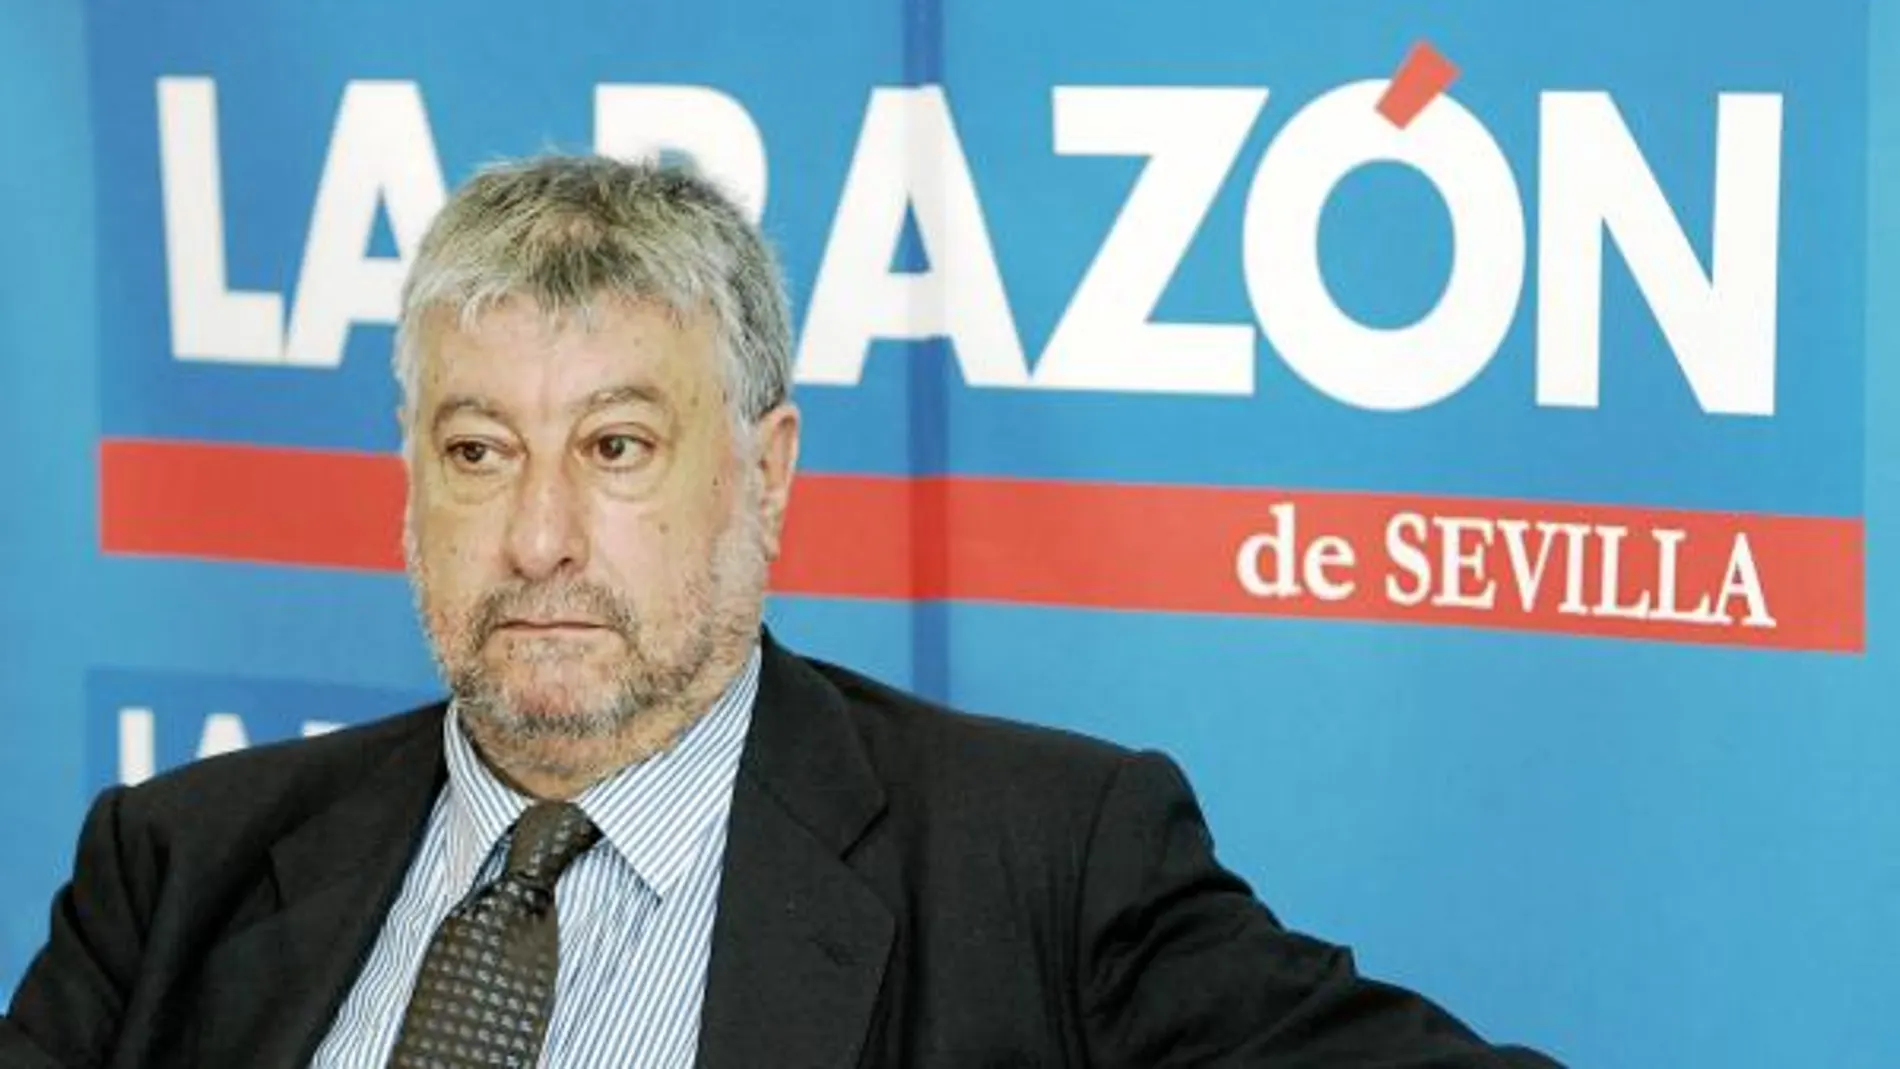 José María Fidalgo: «Le propuse a Solbes nacionalizar la banca y privatizar las cajas»